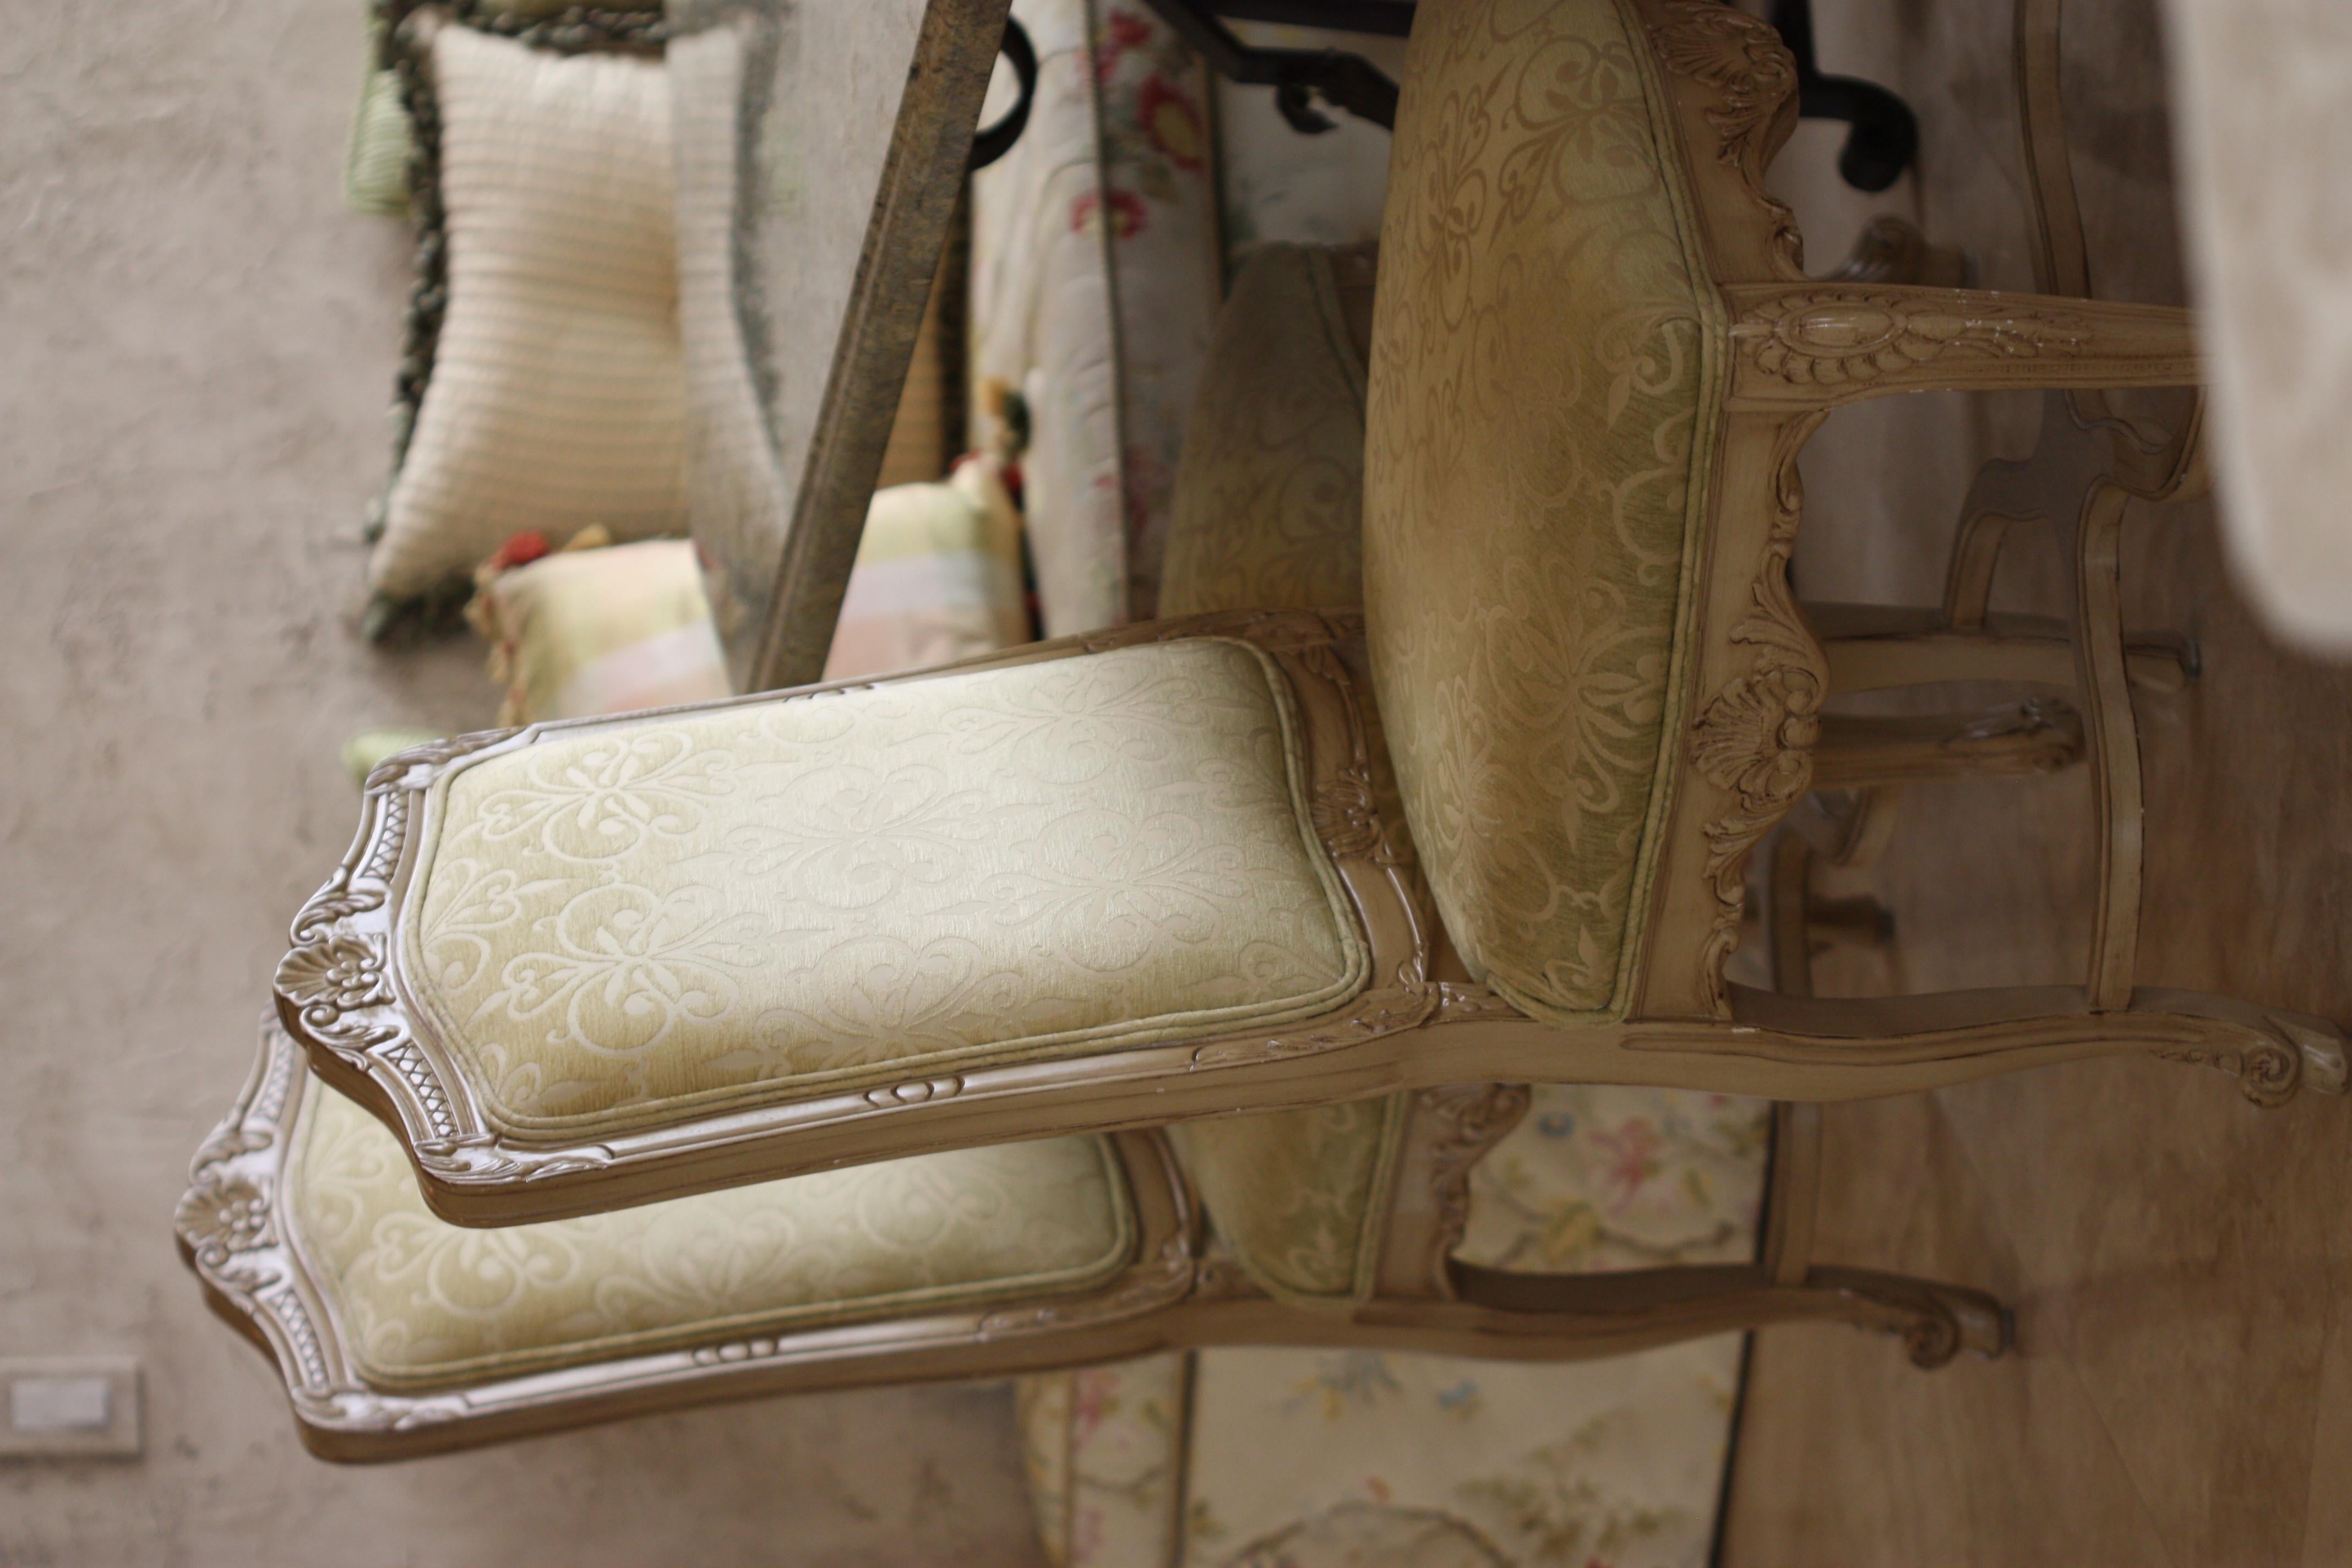 Ensemble de quatre chaises peintes de style Régence 
Comprenant un fauteuil et trois chaises d'appoint, chacun avec un dossier en forme de cartouche, un siège en serpentin et des pieds en cabriole, avec trois coussins.
Hauteur du dossier au sol